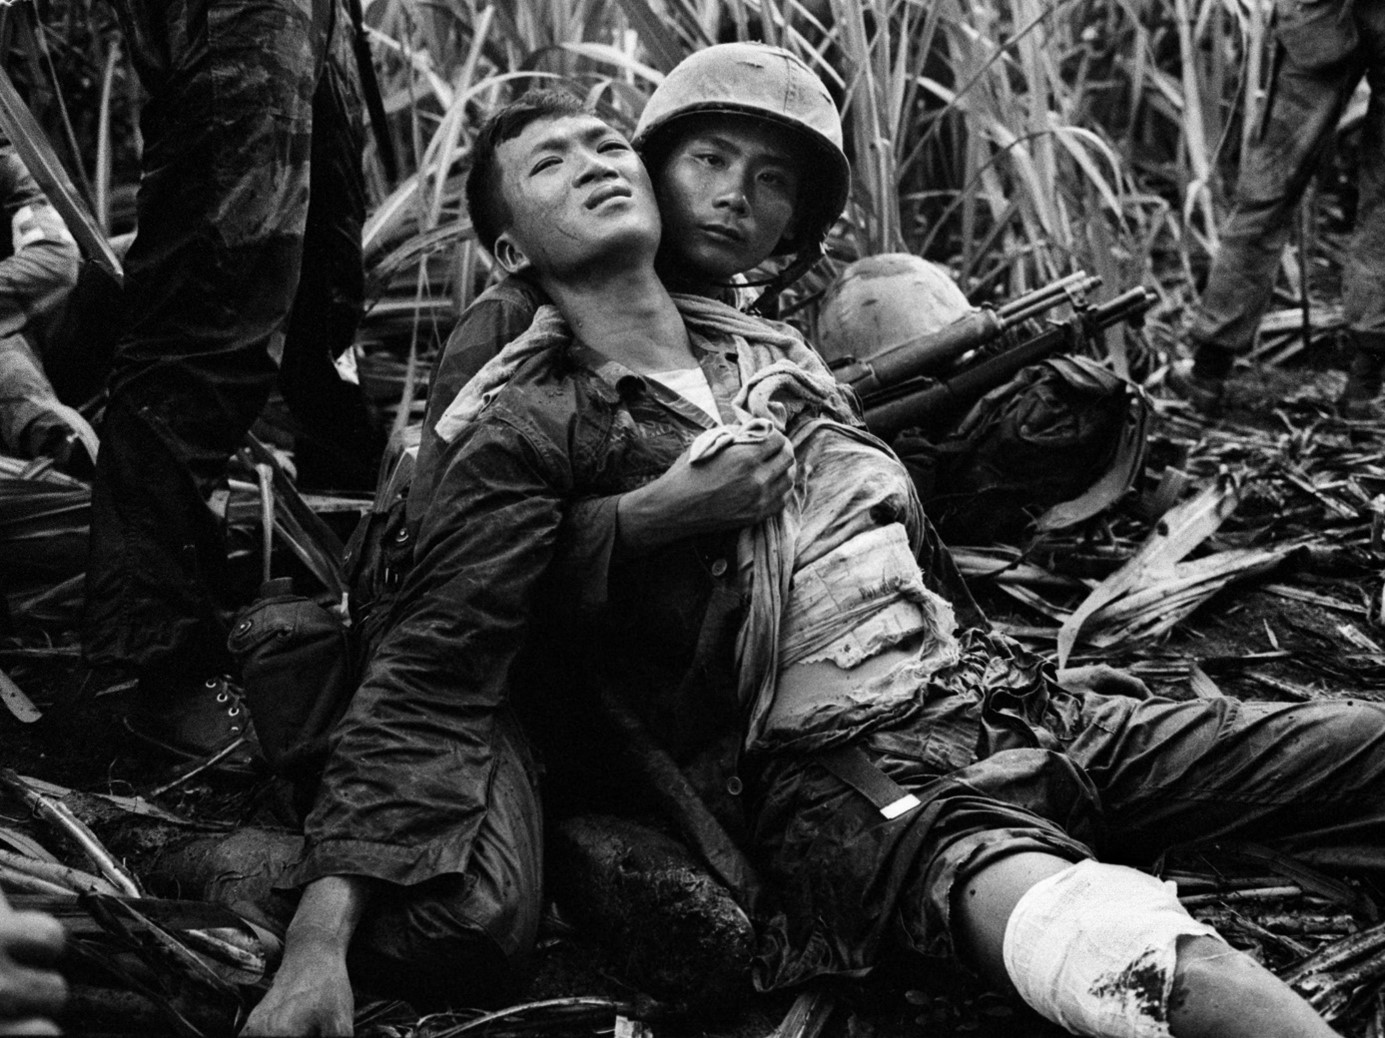 Foto van een vietnamese soldaat die een andere gewonde Vietnamese soldaat vasthoud.